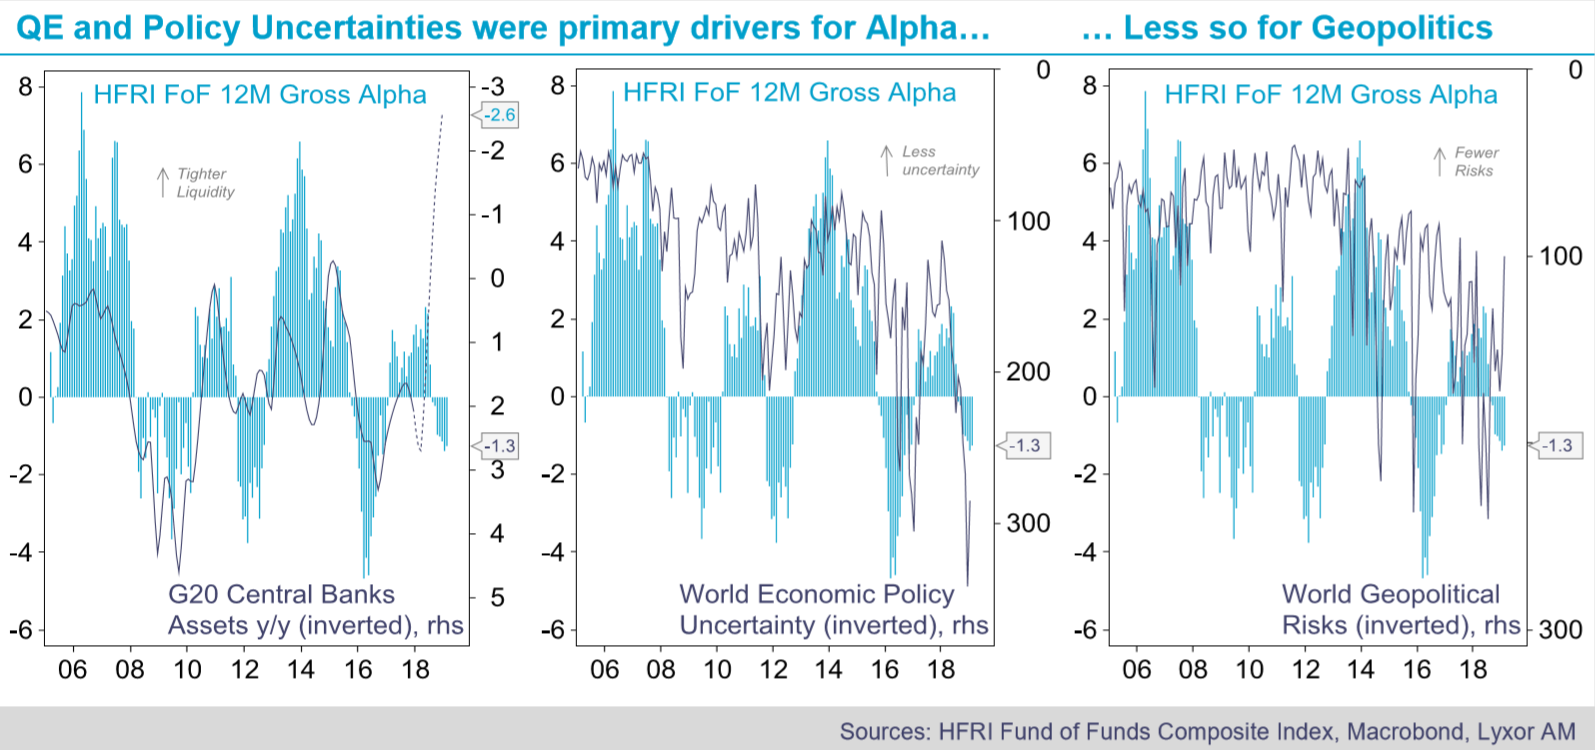 La expansión cuantitativa y la incertidumbre política han afectado al alfa